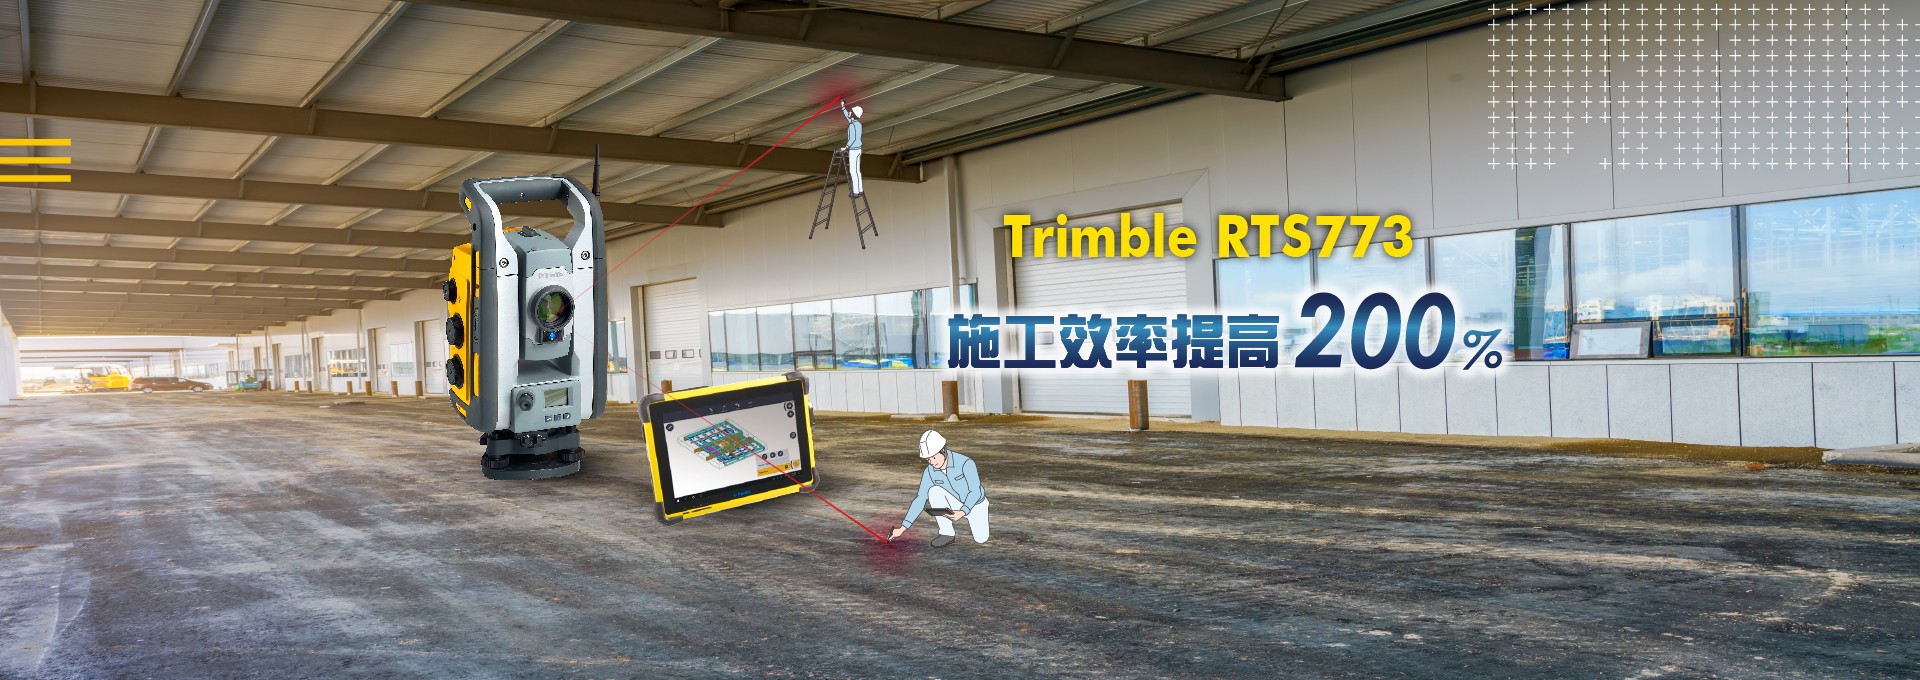 Trimble RTS773